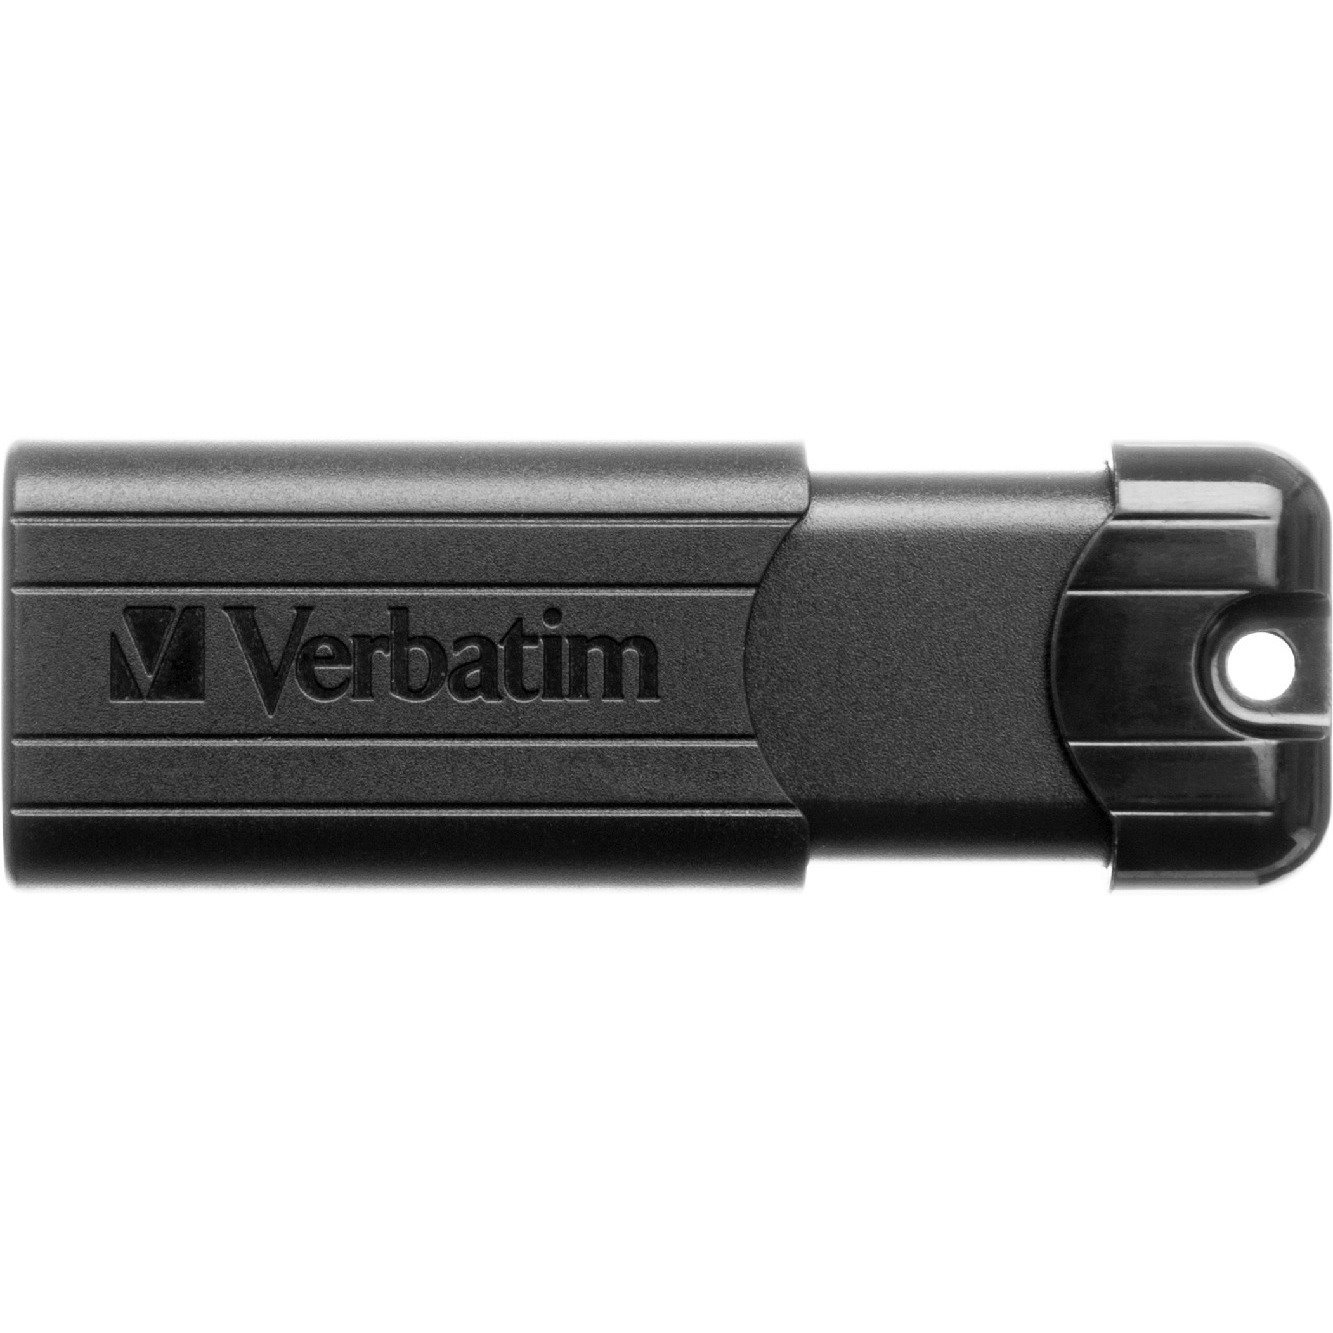 Verbatim PinStripe 128 GB USB 3.0 Flash Drive - Black